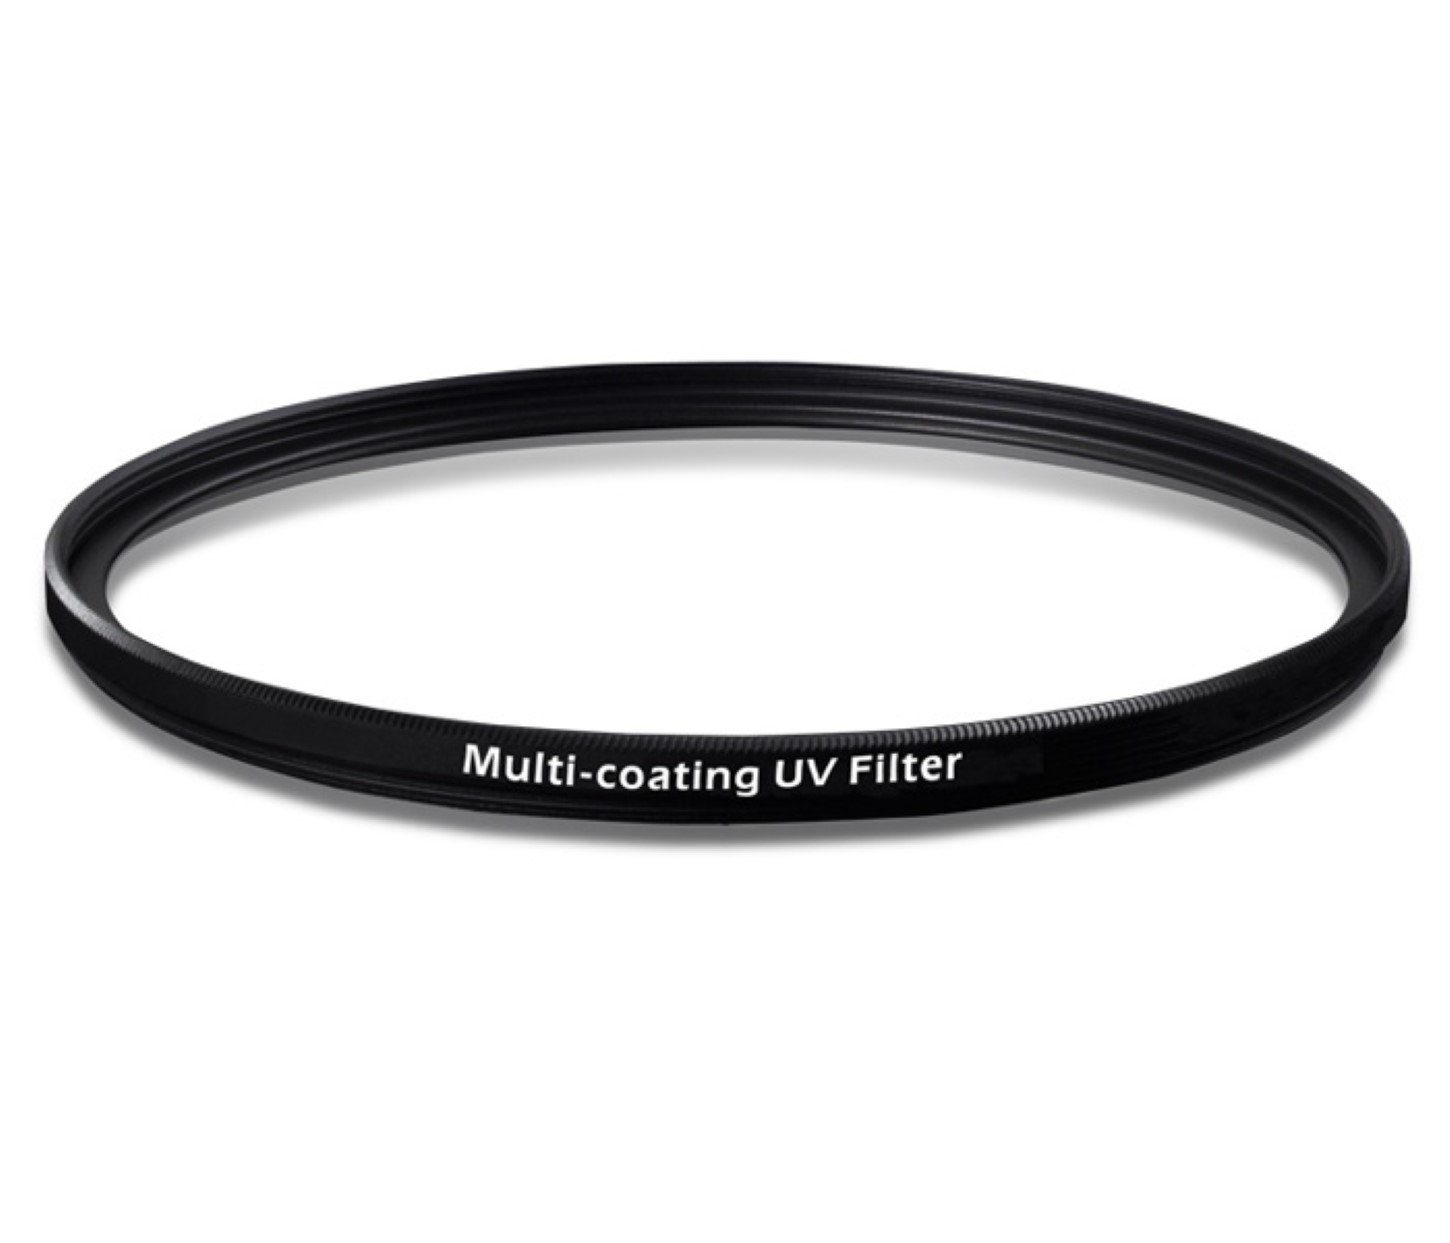 Glas UV mm Foto-UV-Filter mehrfach ayex 55 Coating Multi Filter vergütetes Schott